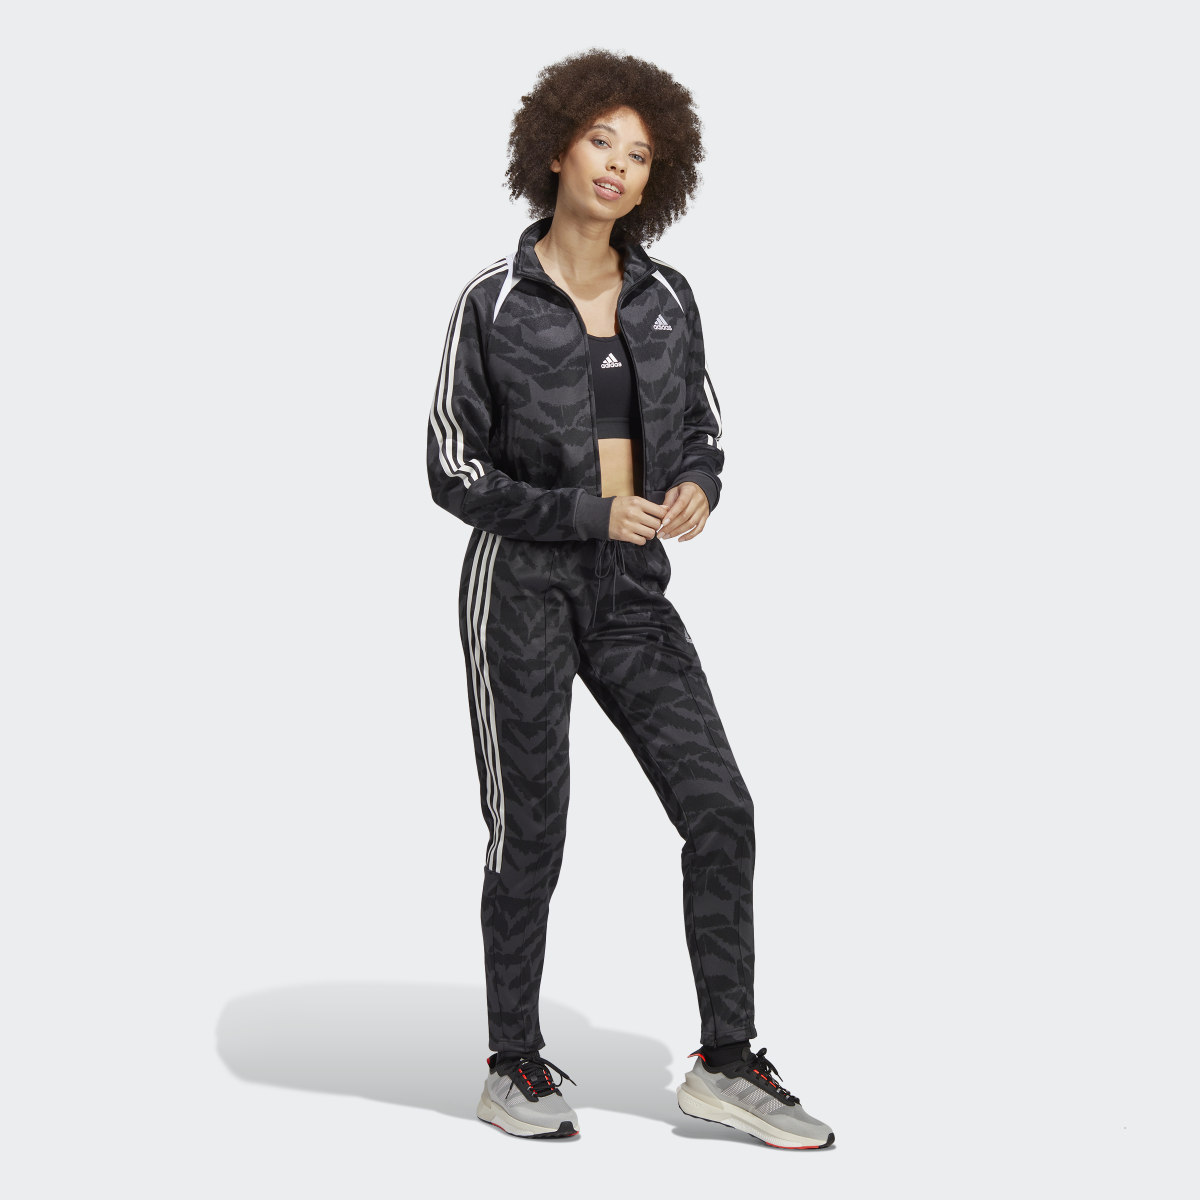 Adidas Tiro Suit Up Lifestyle Track Jacket. 9